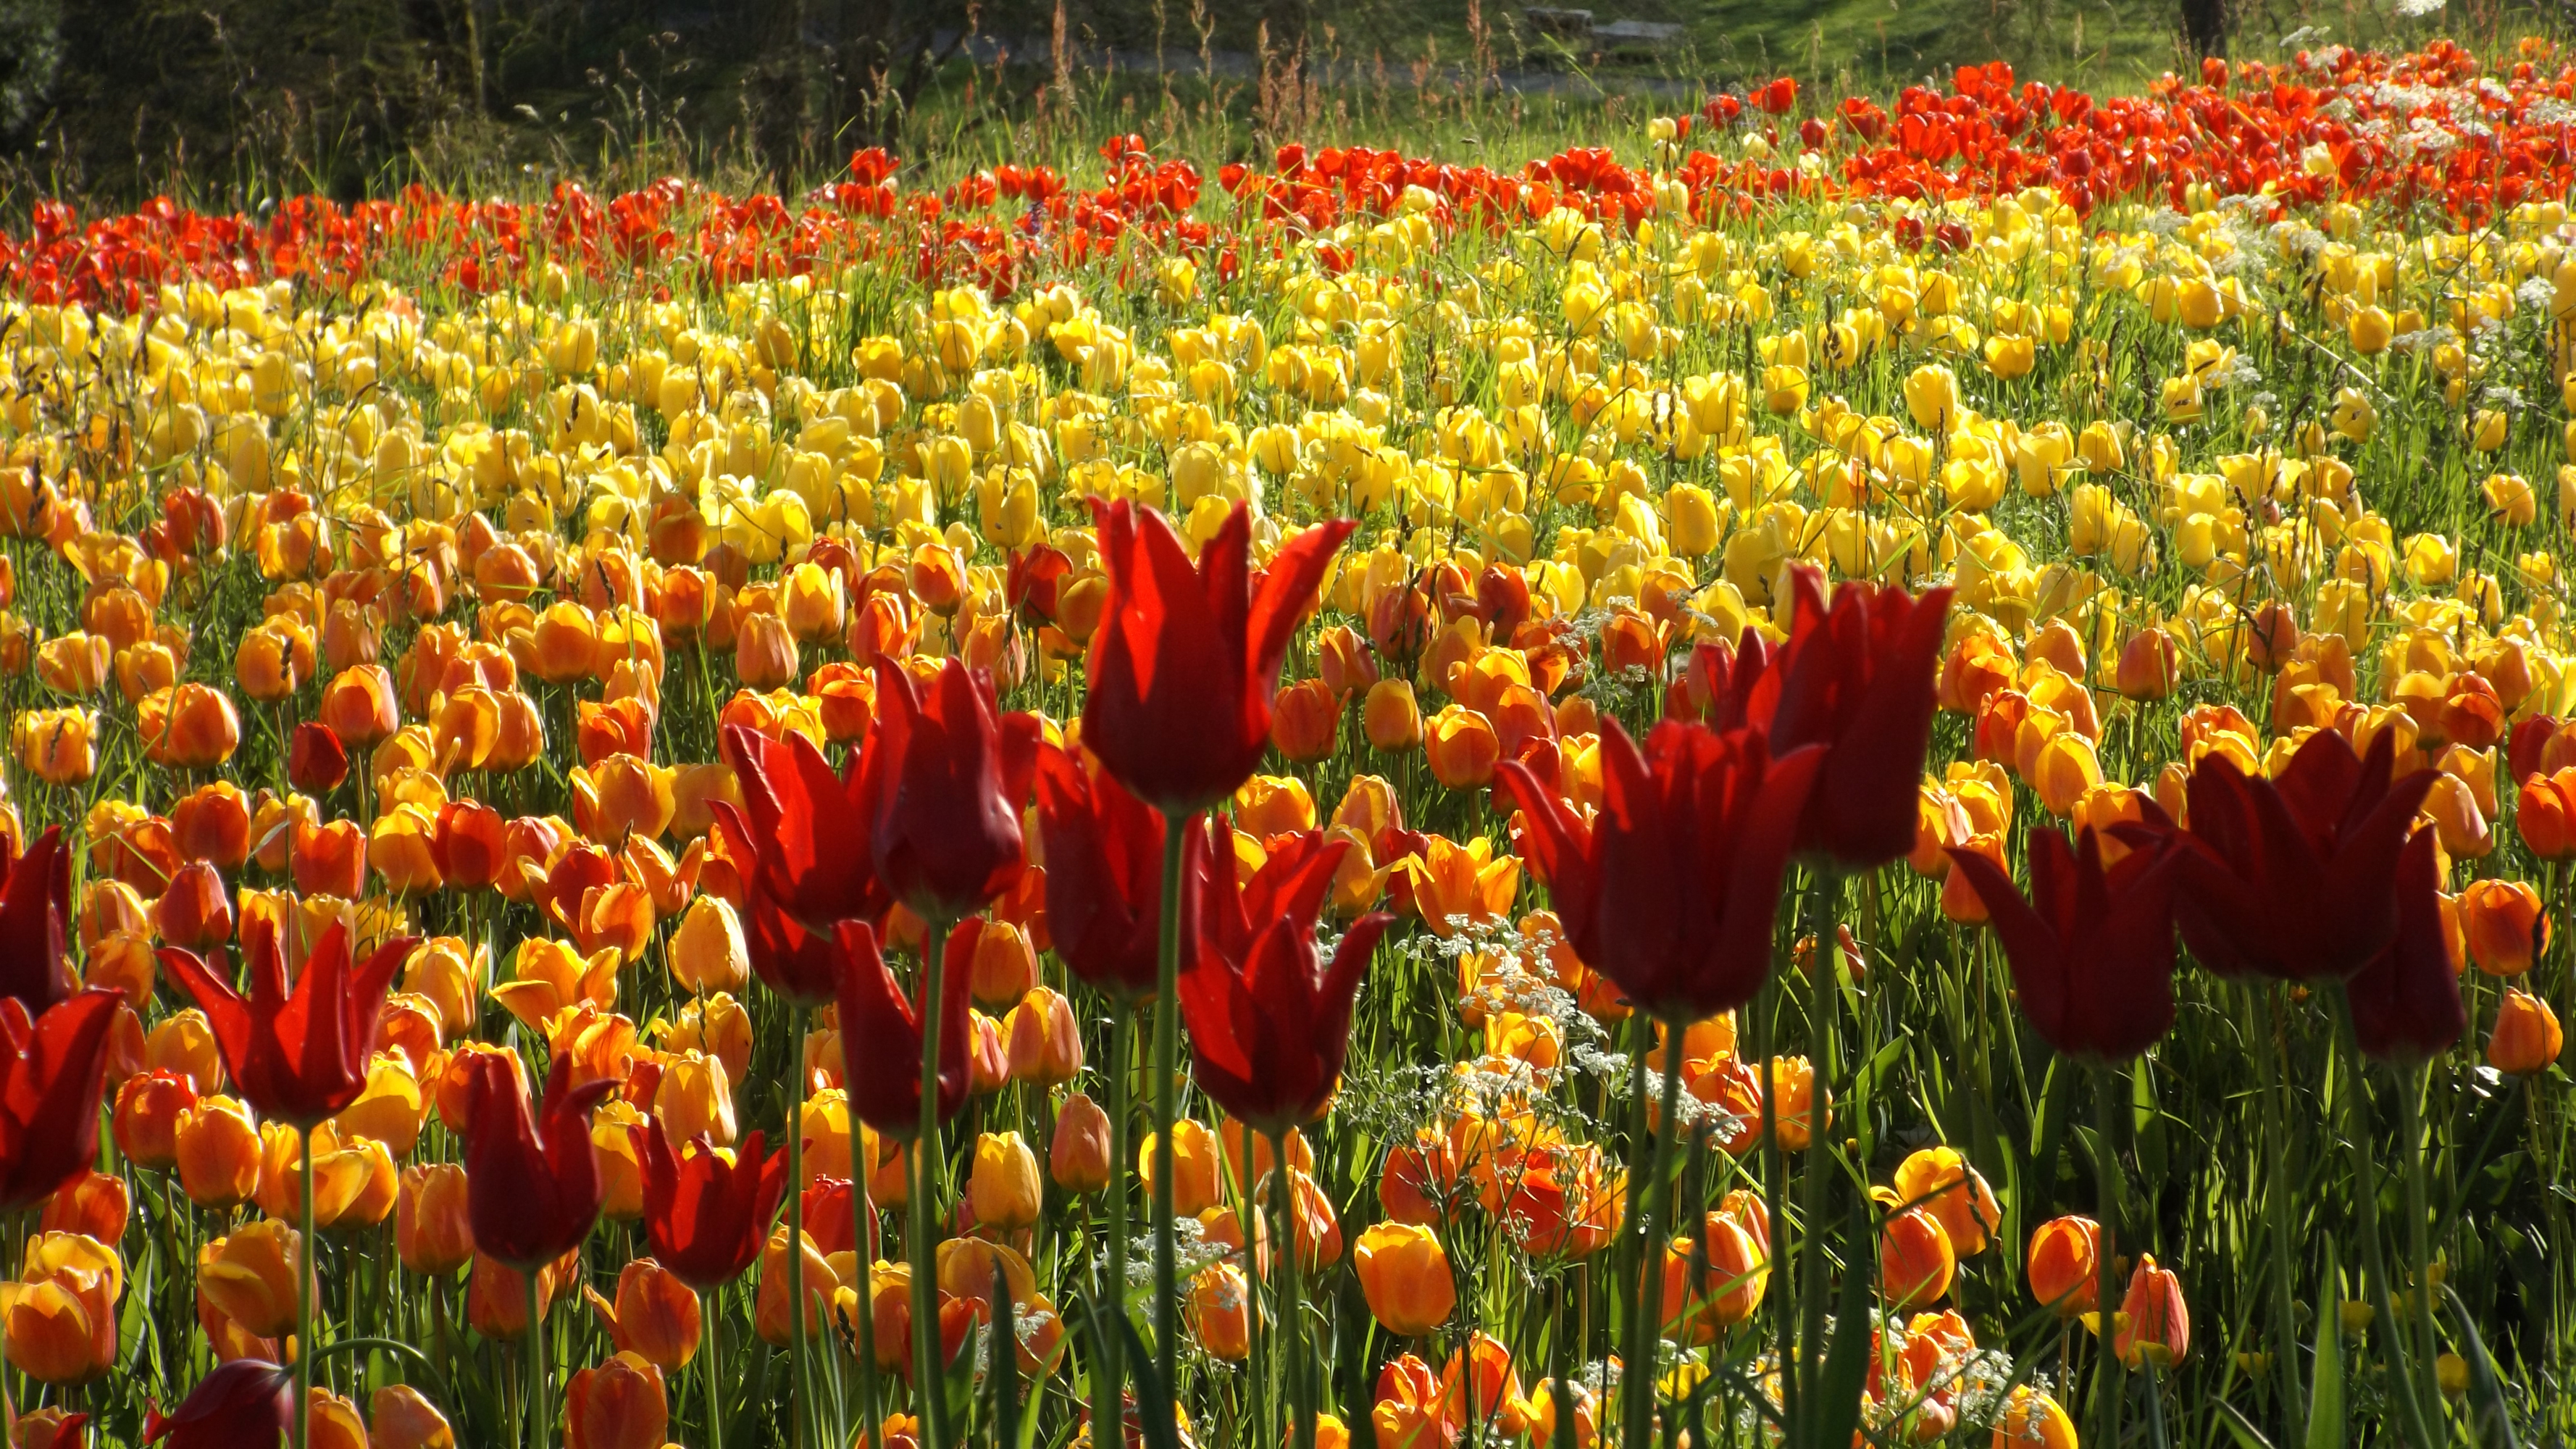 Descarga gratuita de fondo de pantalla para móvil de Naturaleza, Flores, Verano, Flor, Tulipán, Flor Amarilla, Flor Roja, Tierra/naturaleza, Flor Naranja.